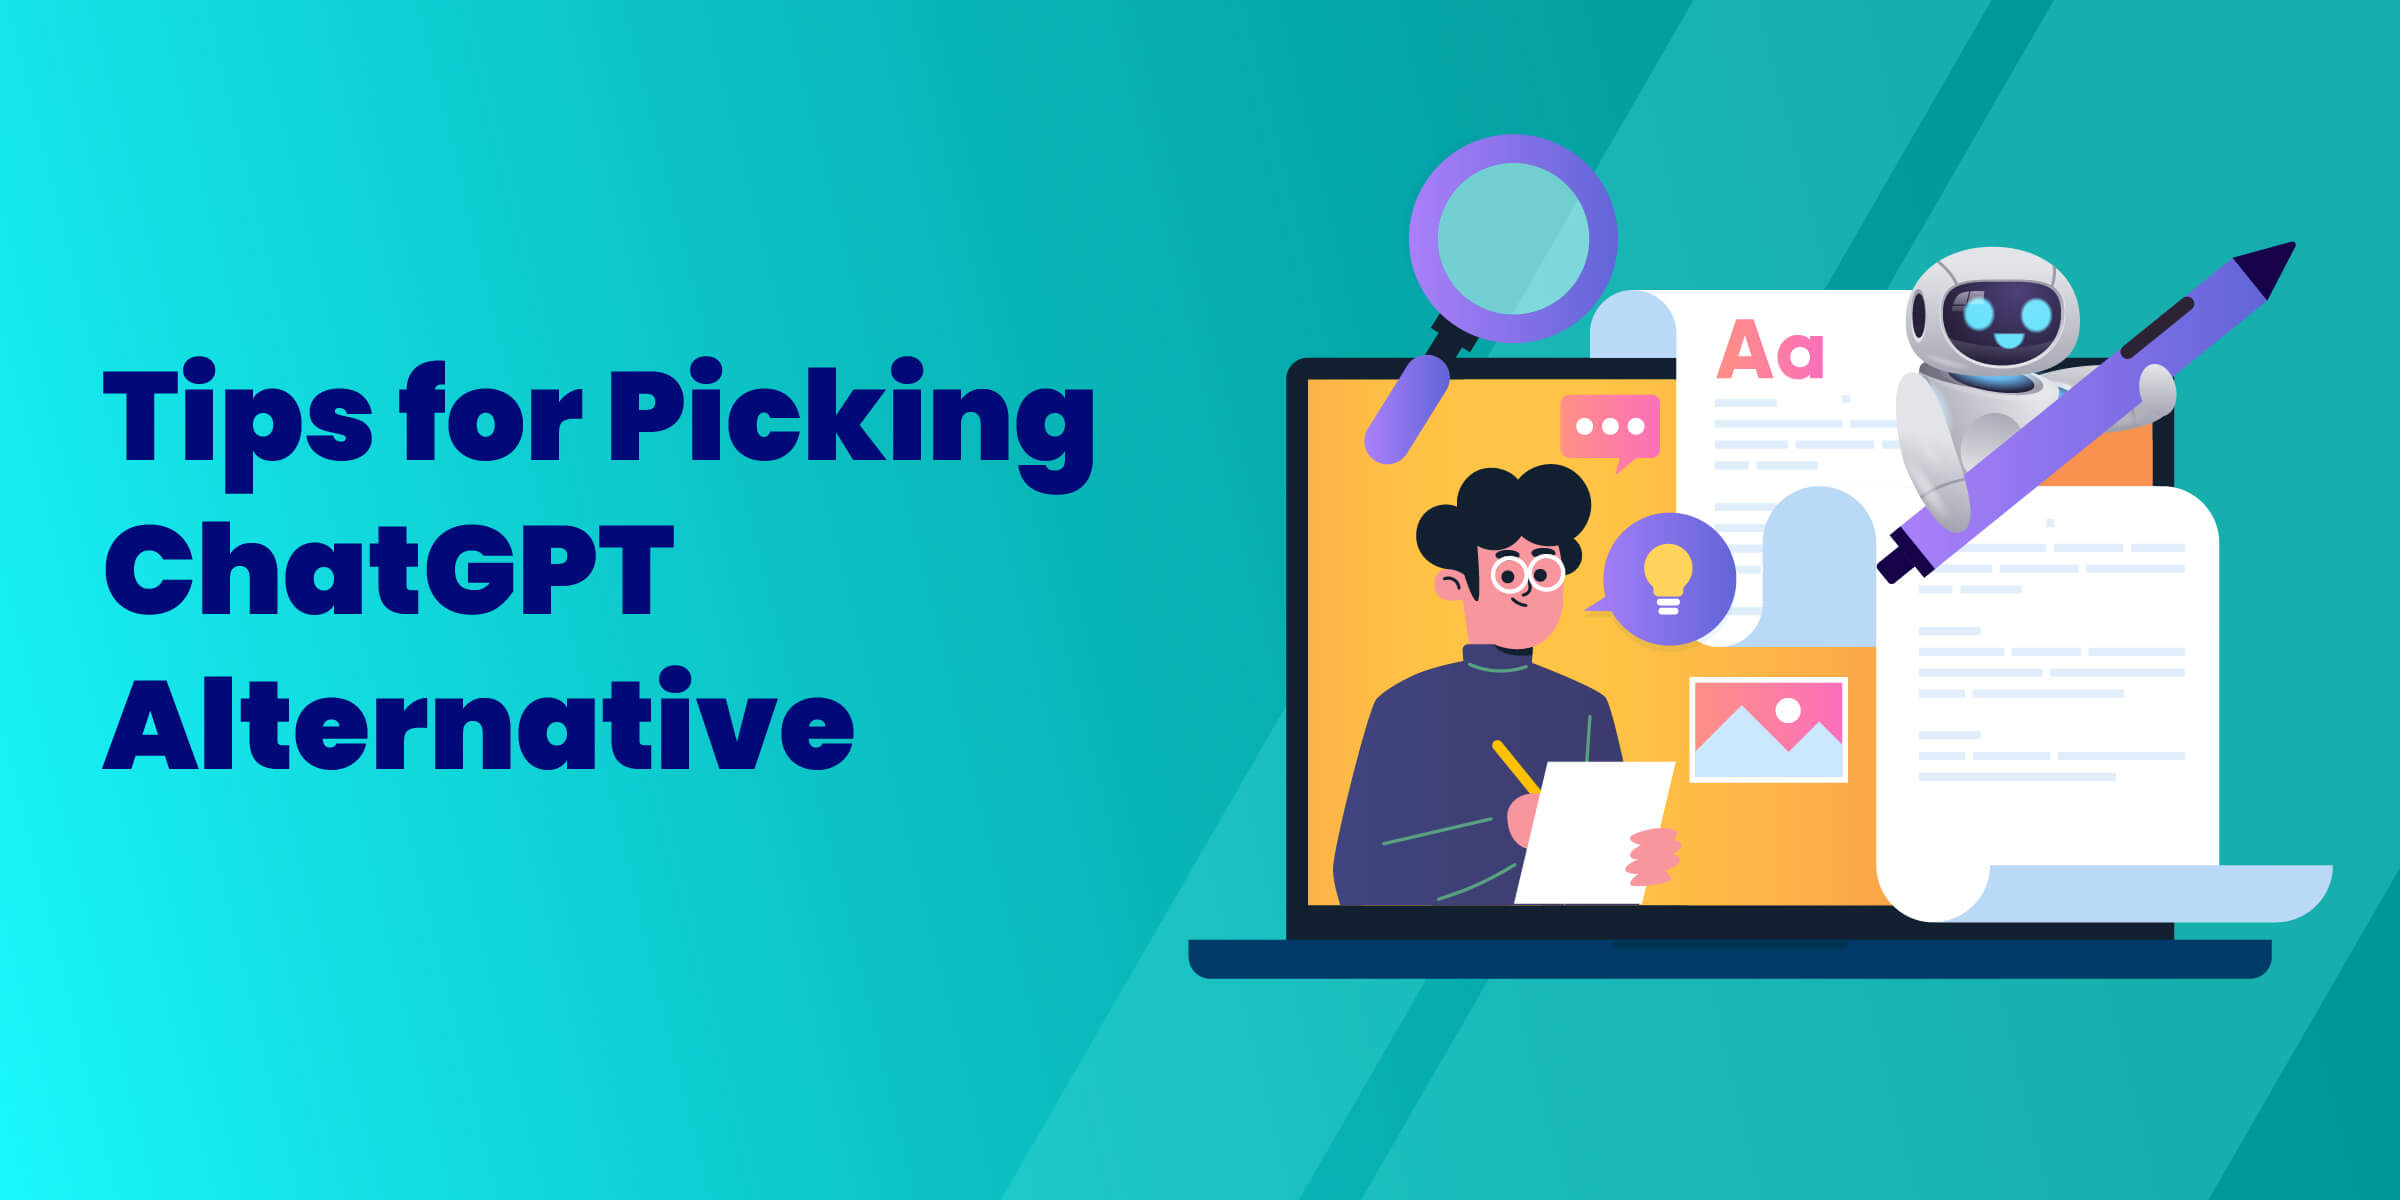 Tips for Picking ChatGPT Alternatives